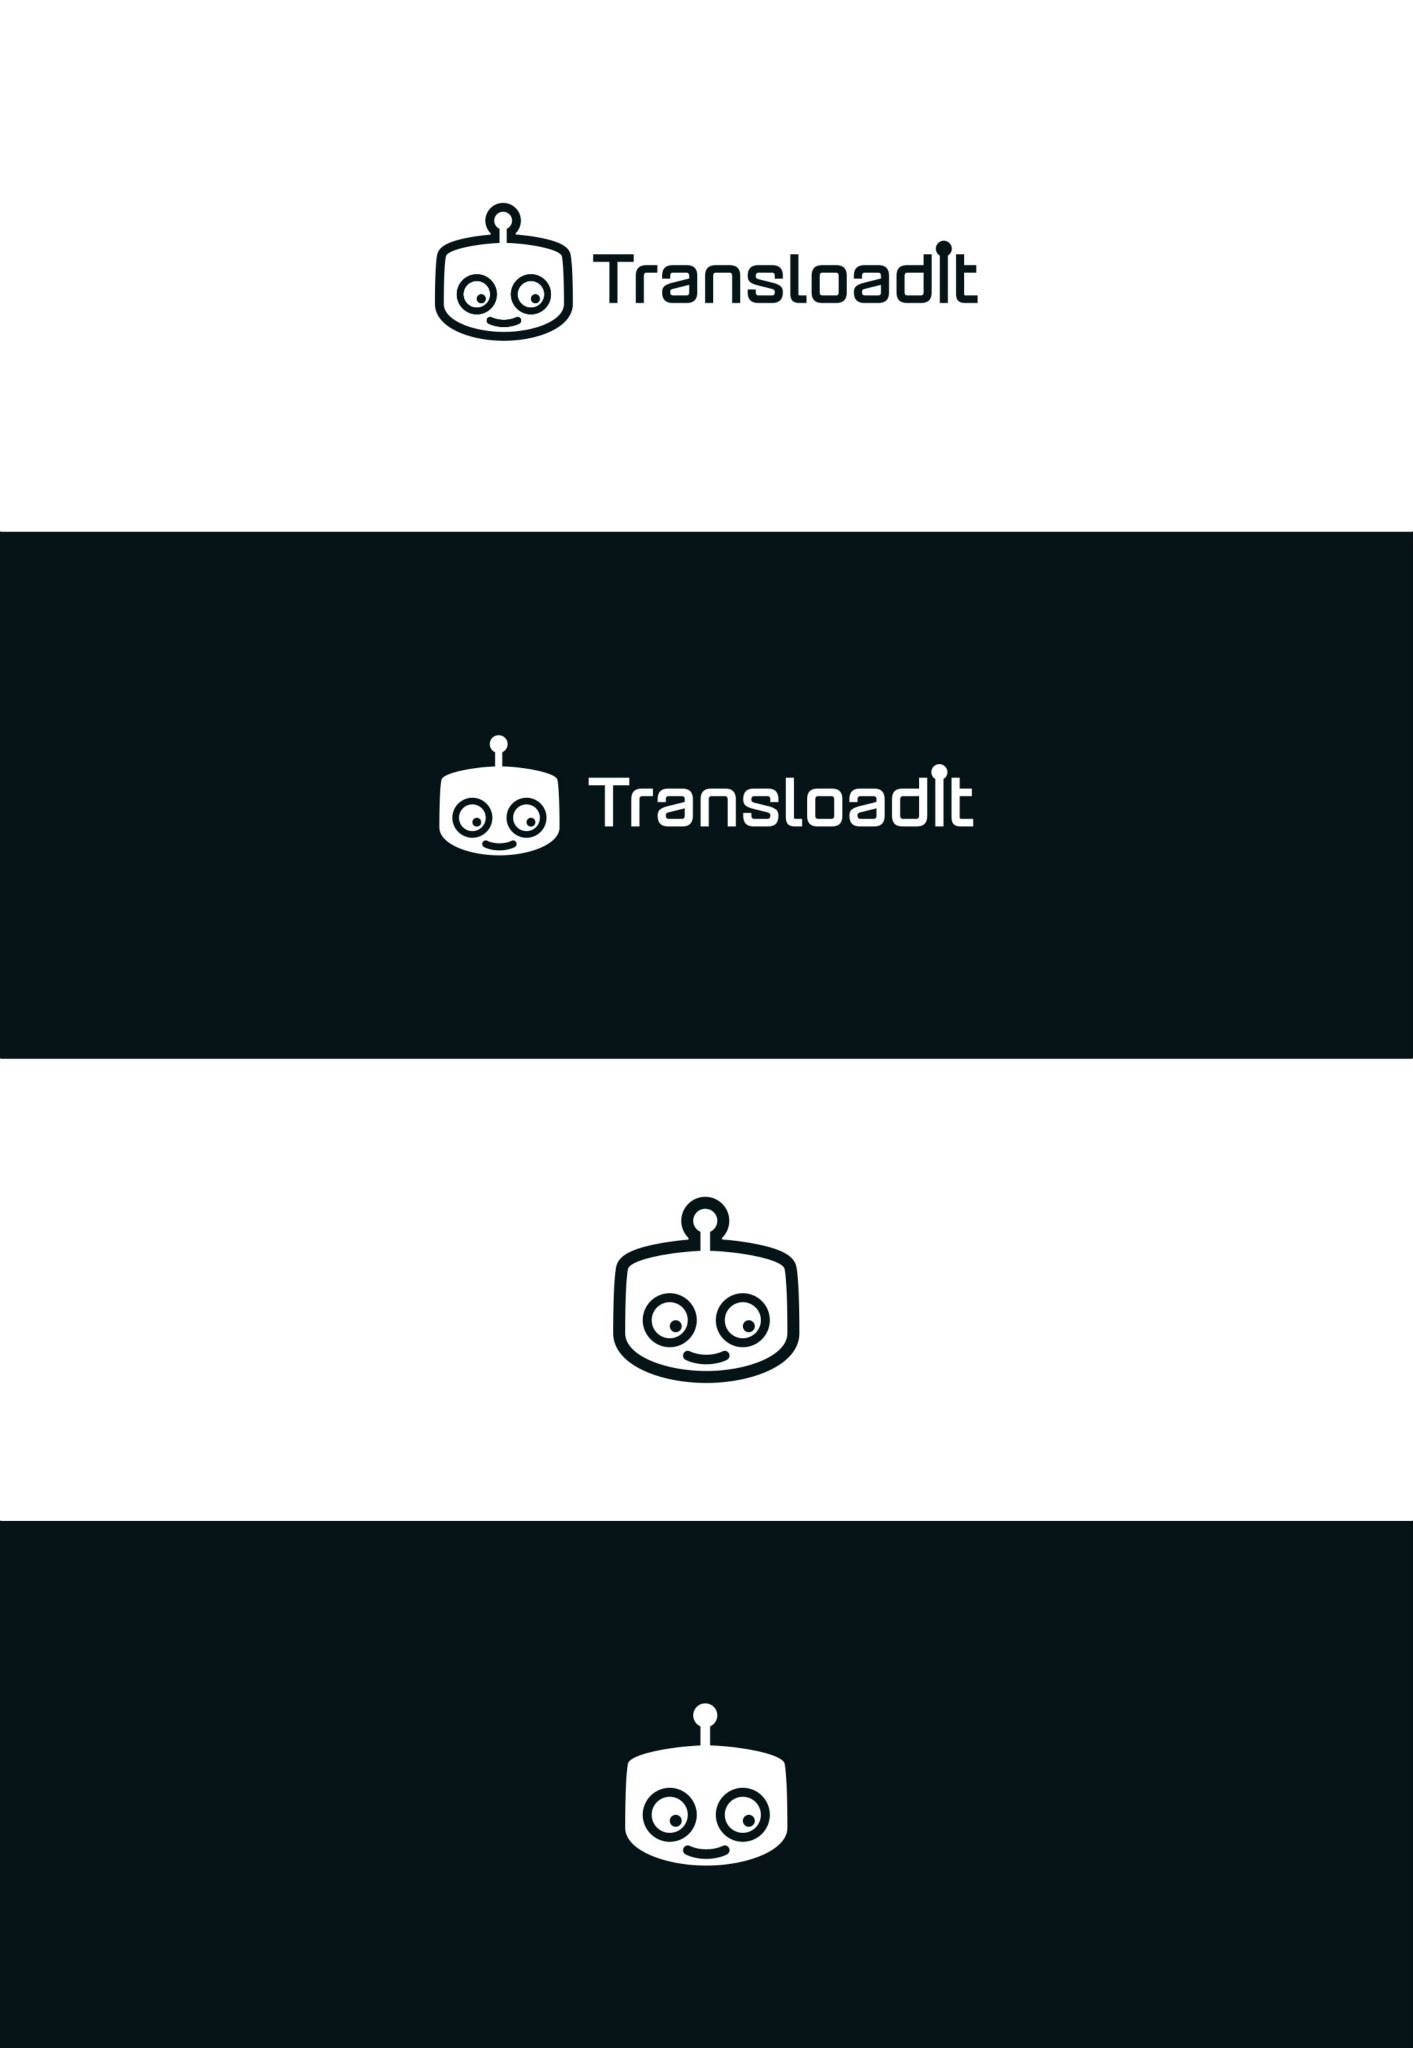 Transloadit's logos as of 2015